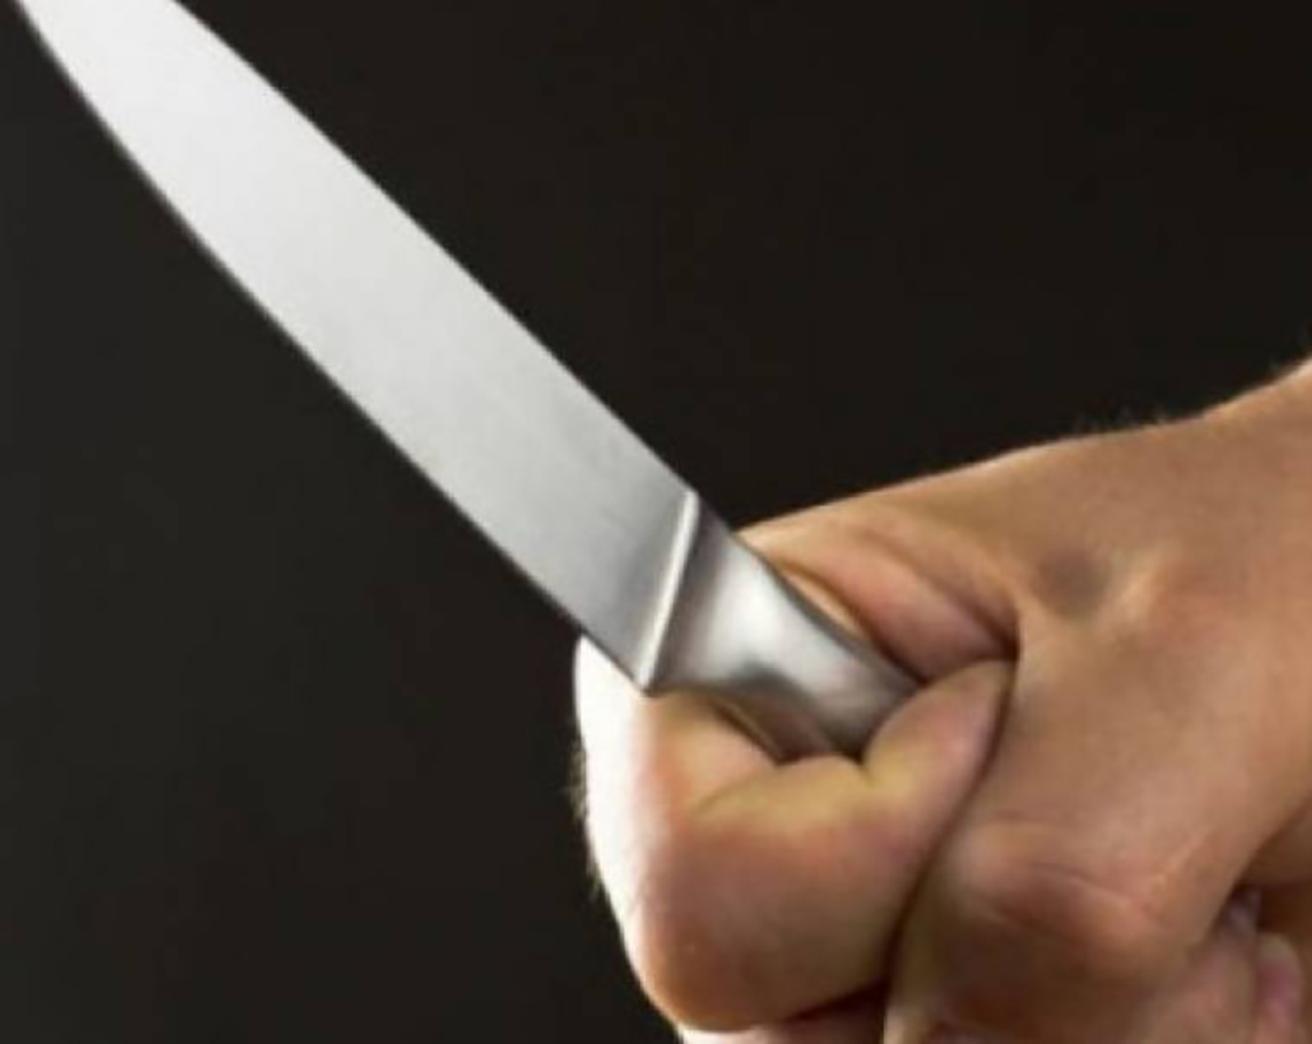 Imagen de referencia de joven con un cuchilló con el que atacó sus padres/imagen tomada del Territorio 